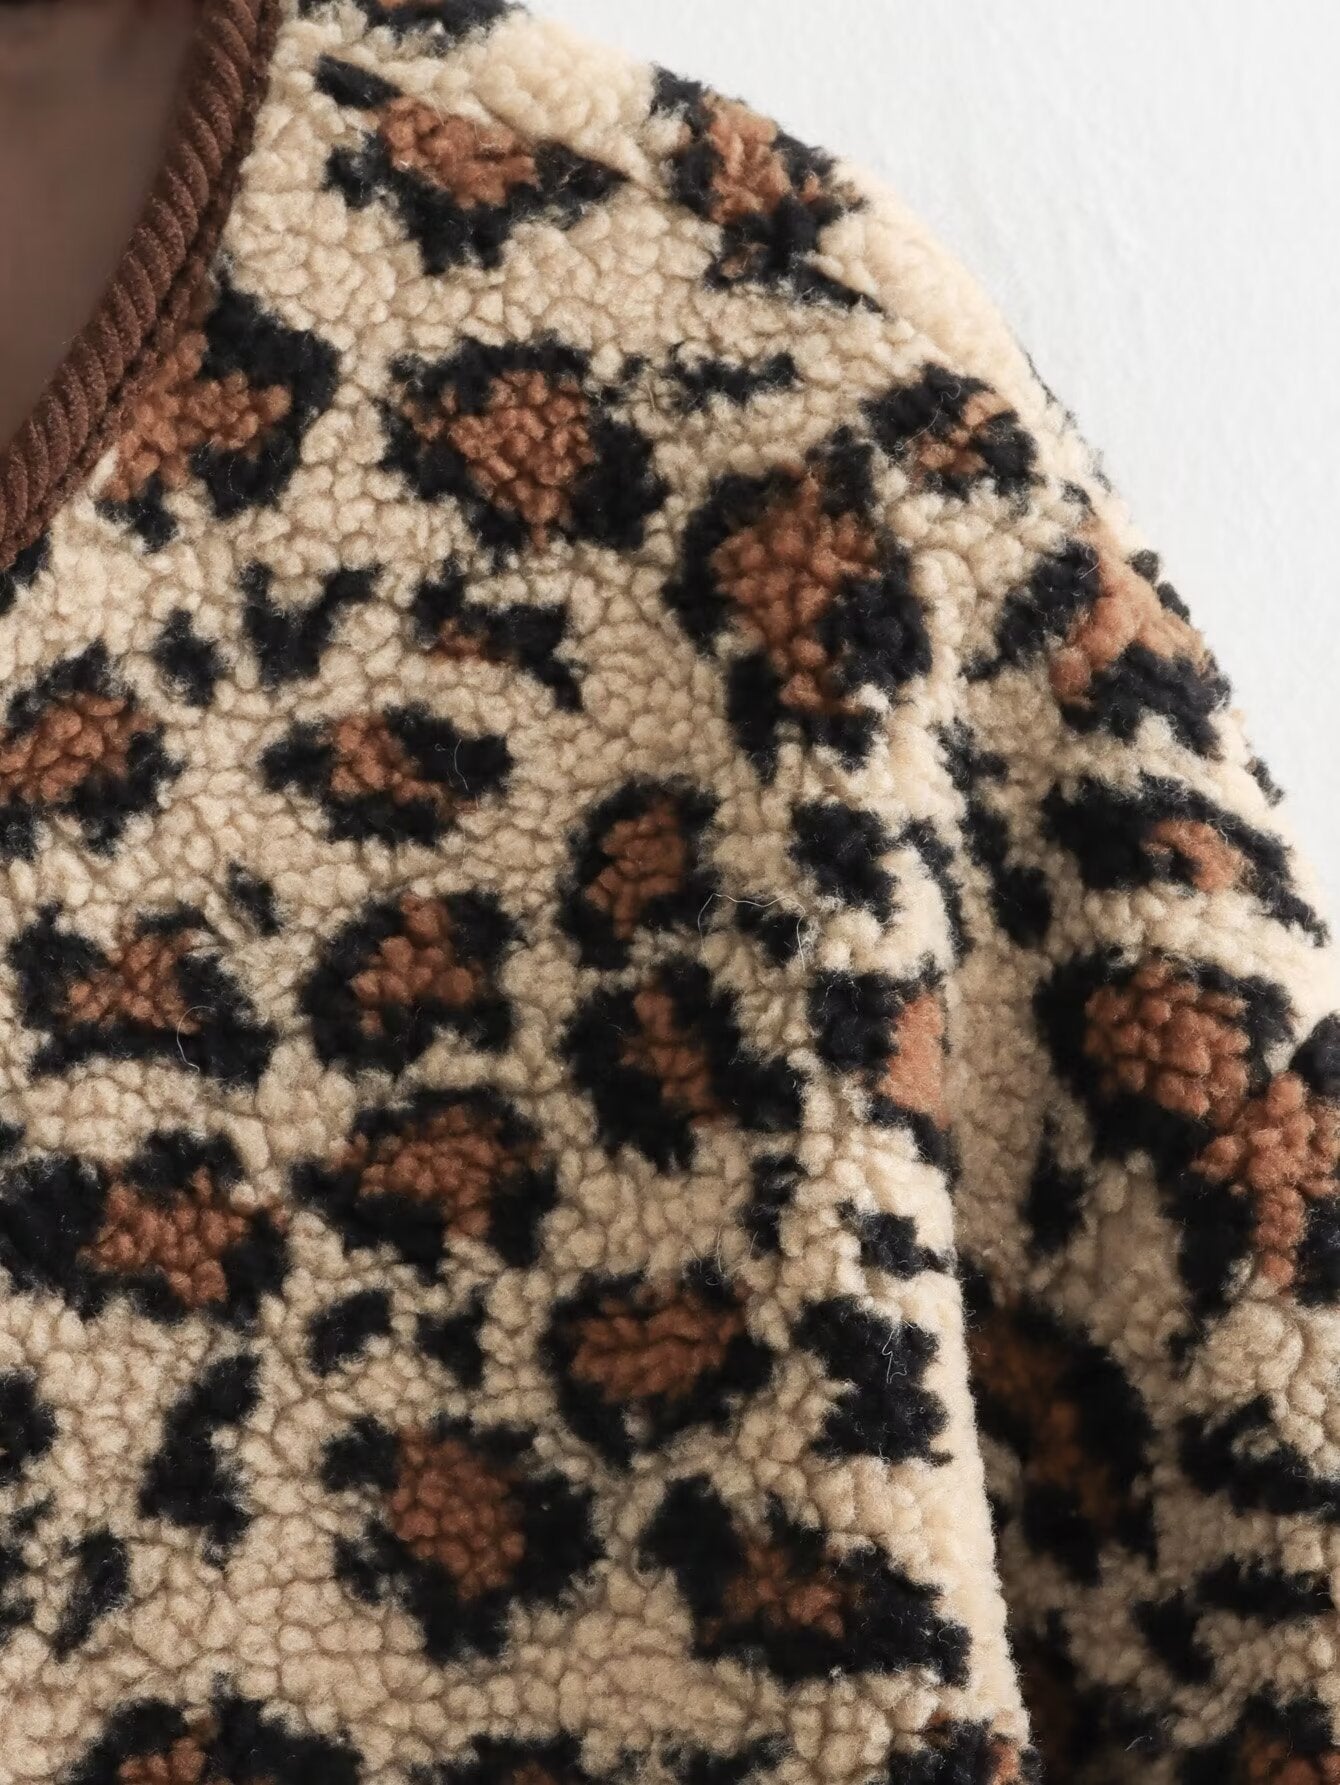 Cardigan surdimensionné en peluche léopard pour femme